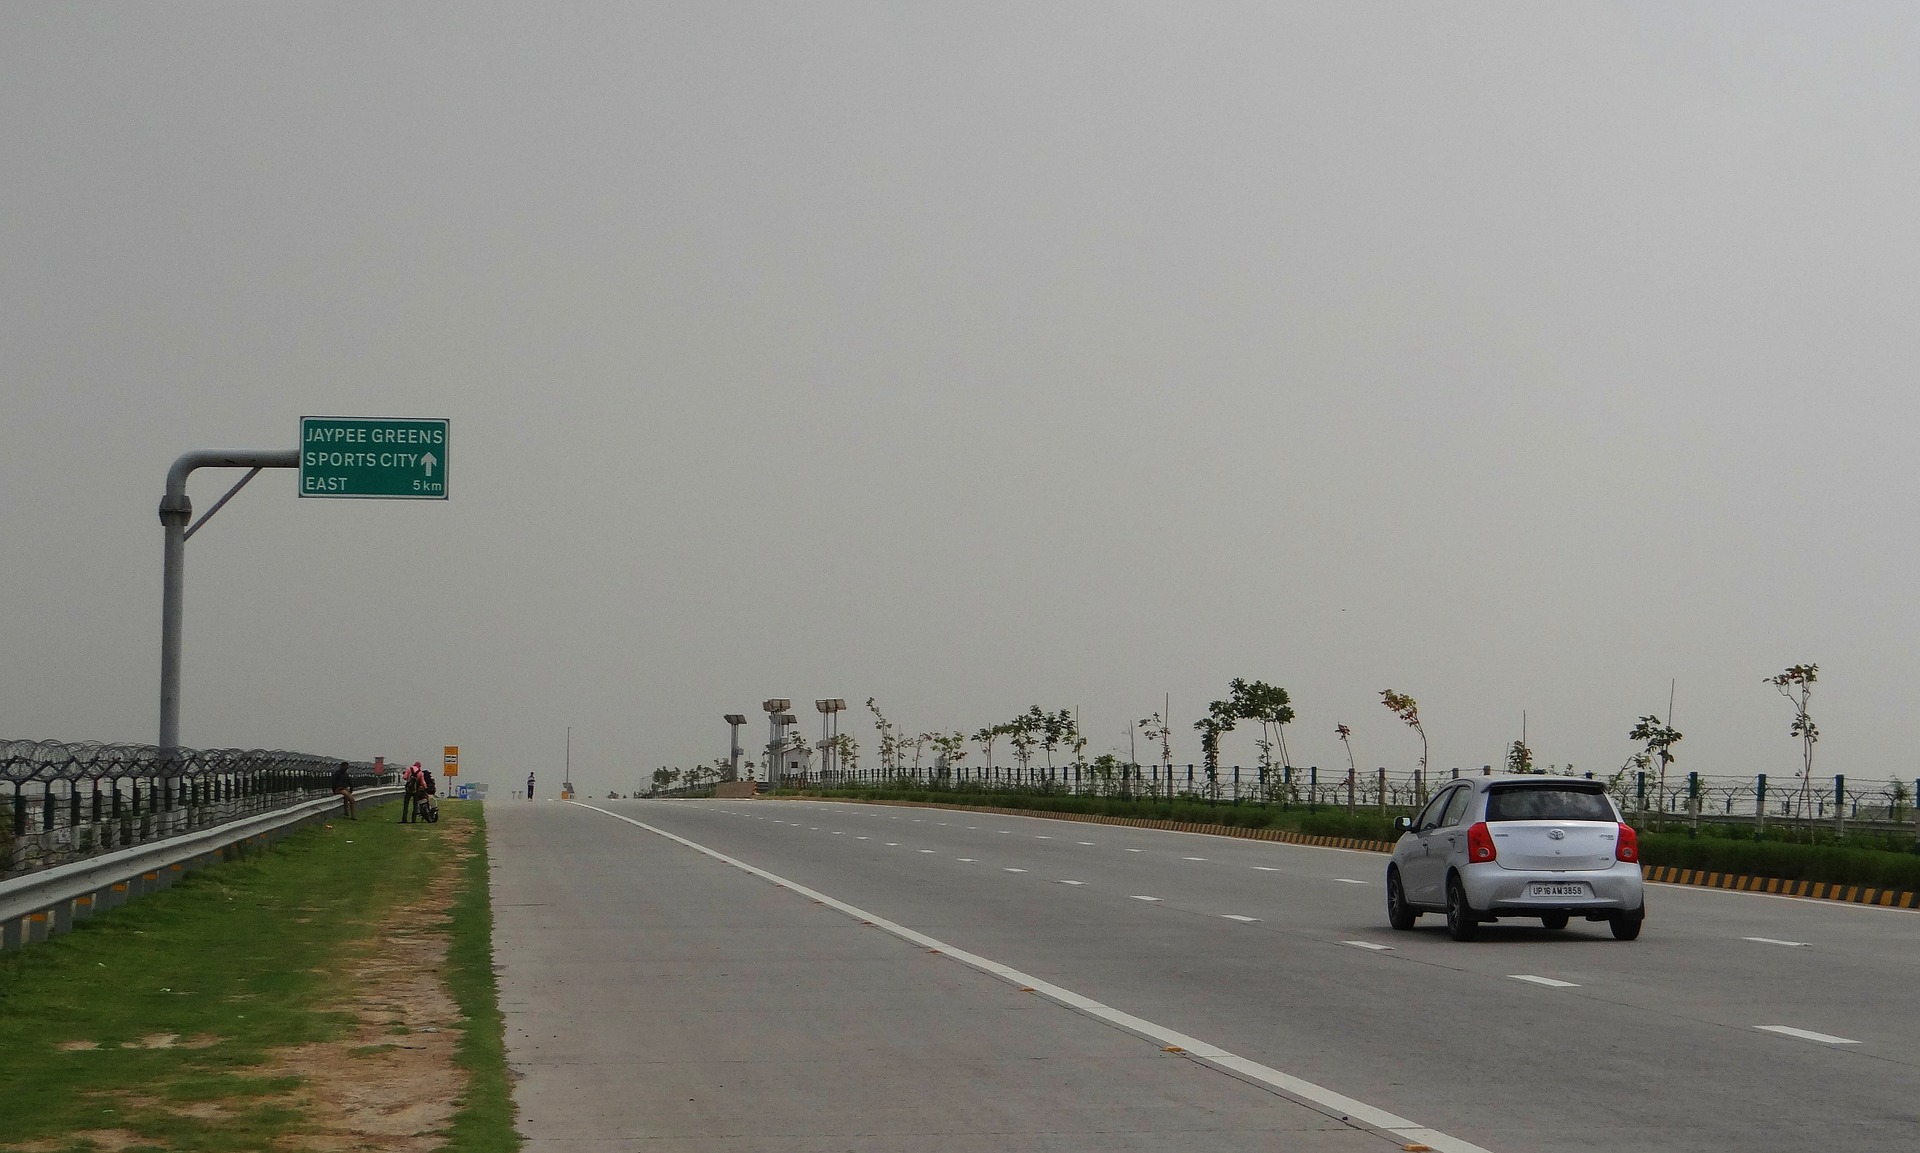 Los mejores viajes por carretera después del bloqueo de Covid en India